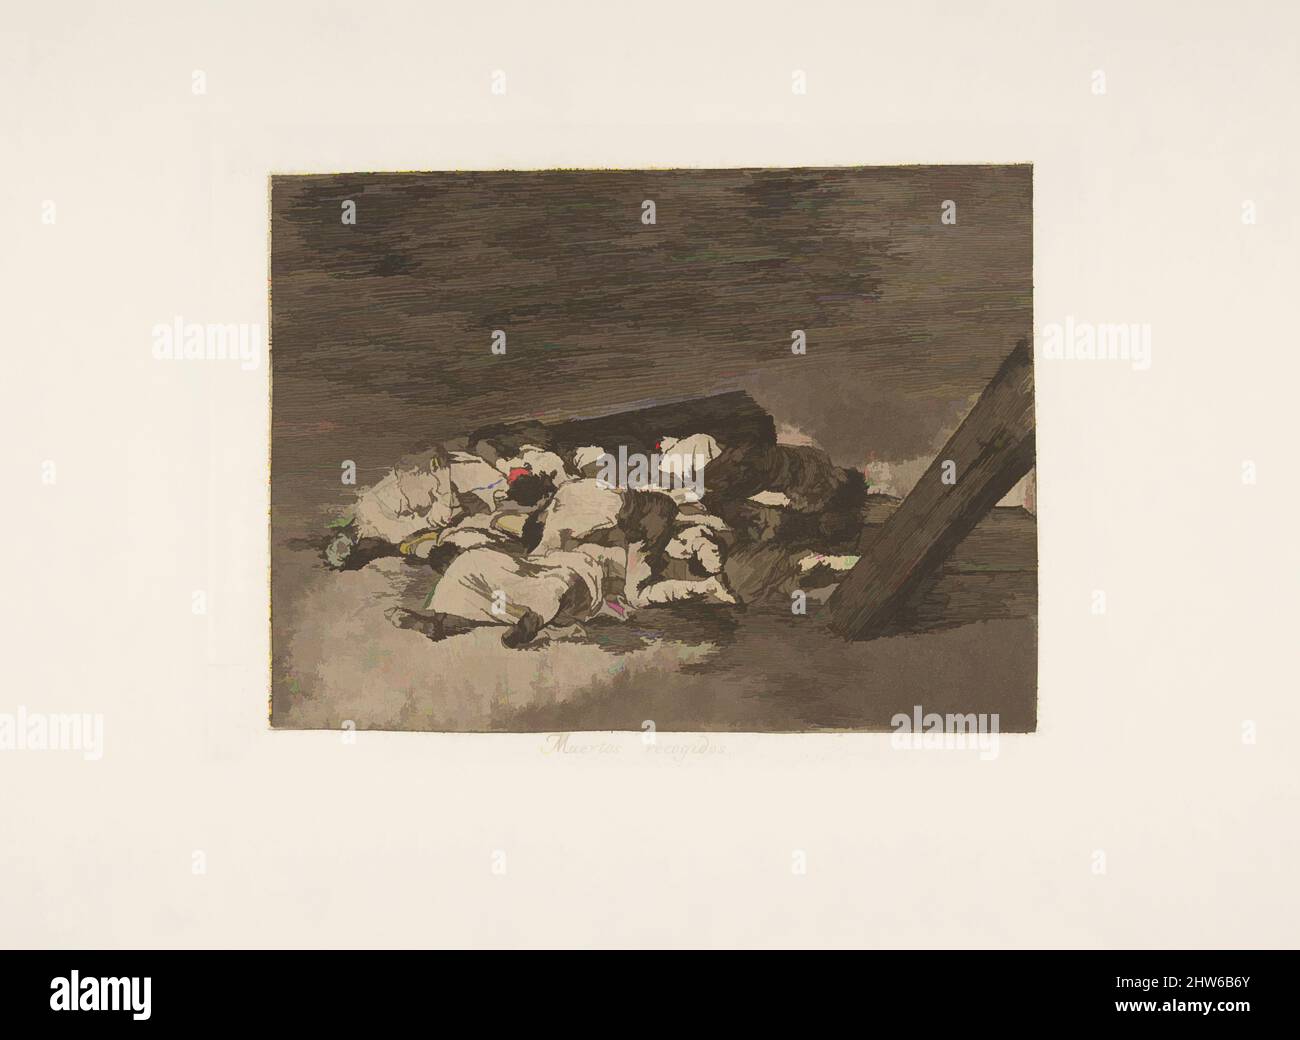 Art inspiré par la planche 63 de 'les désastres de la guerre' (Los Desastres de la Guerra): 'Récolte des morts' (Muertos recogidos.), 1811–12 (publié en 1863), Etching et aquatint bruni, plaque: 5 7/8 × 8 1/16 po. (15 × 20,5 cm), Prints, Goya (Francisco de Goya y Lucientes) (espagnol, oeuvres classiques modernisées par Artotop avec une touche de modernité. Formes, couleur et valeur, impact visuel accrocheur sur l'art émotions par la liberté d'œuvres d'art d'une manière contemporaine. Un message intemporel qui cherche une nouvelle direction créative. Artistes qui se tournent vers le support numérique et créent le NFT Artotop Banque D'Images